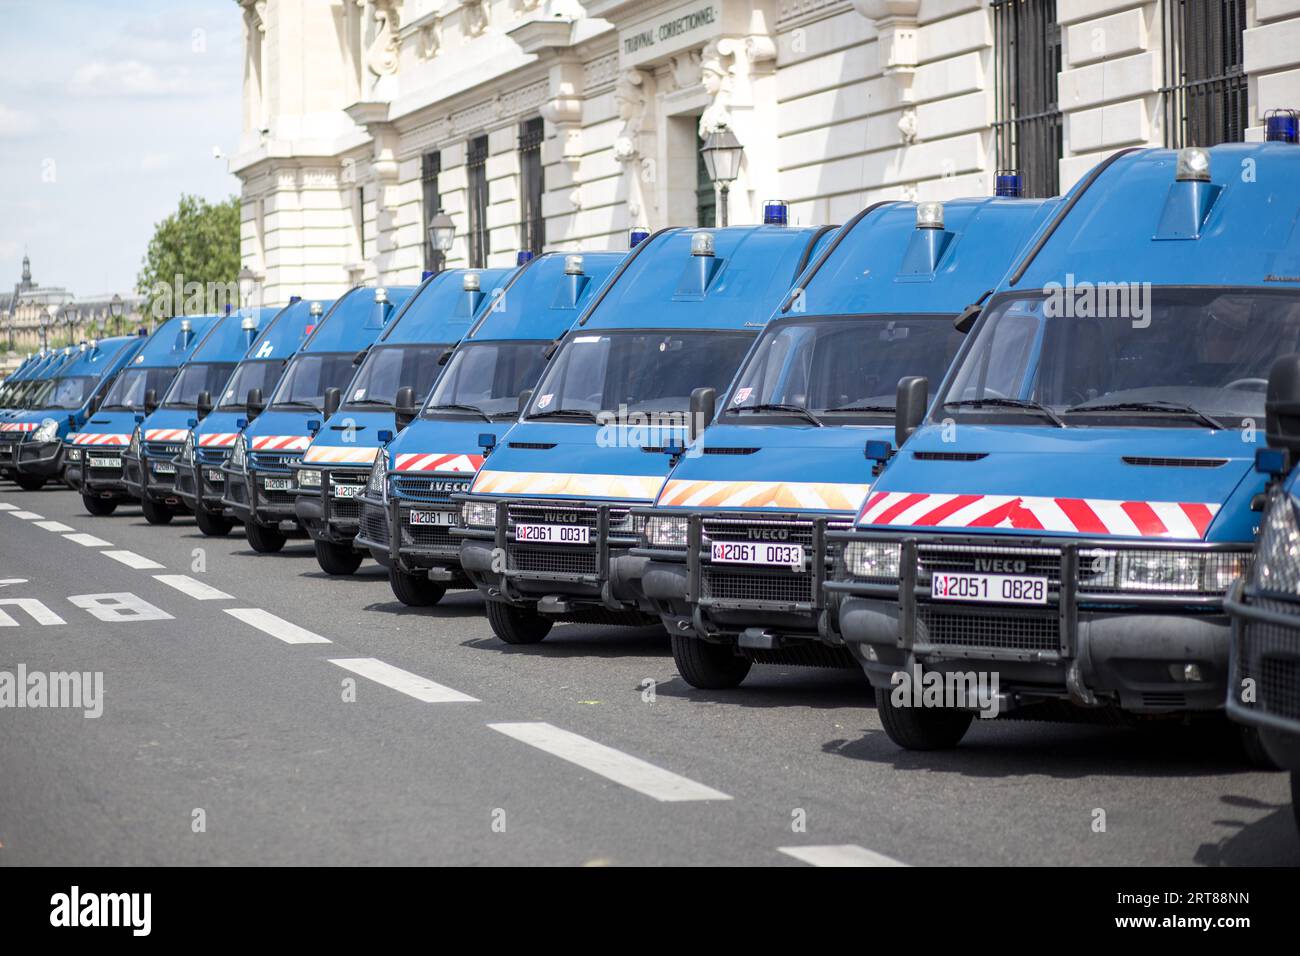 Paris, France, 11 mai 2017 : rangée de voitures de police bleues garées dans les rues de Paris Banque D'Images